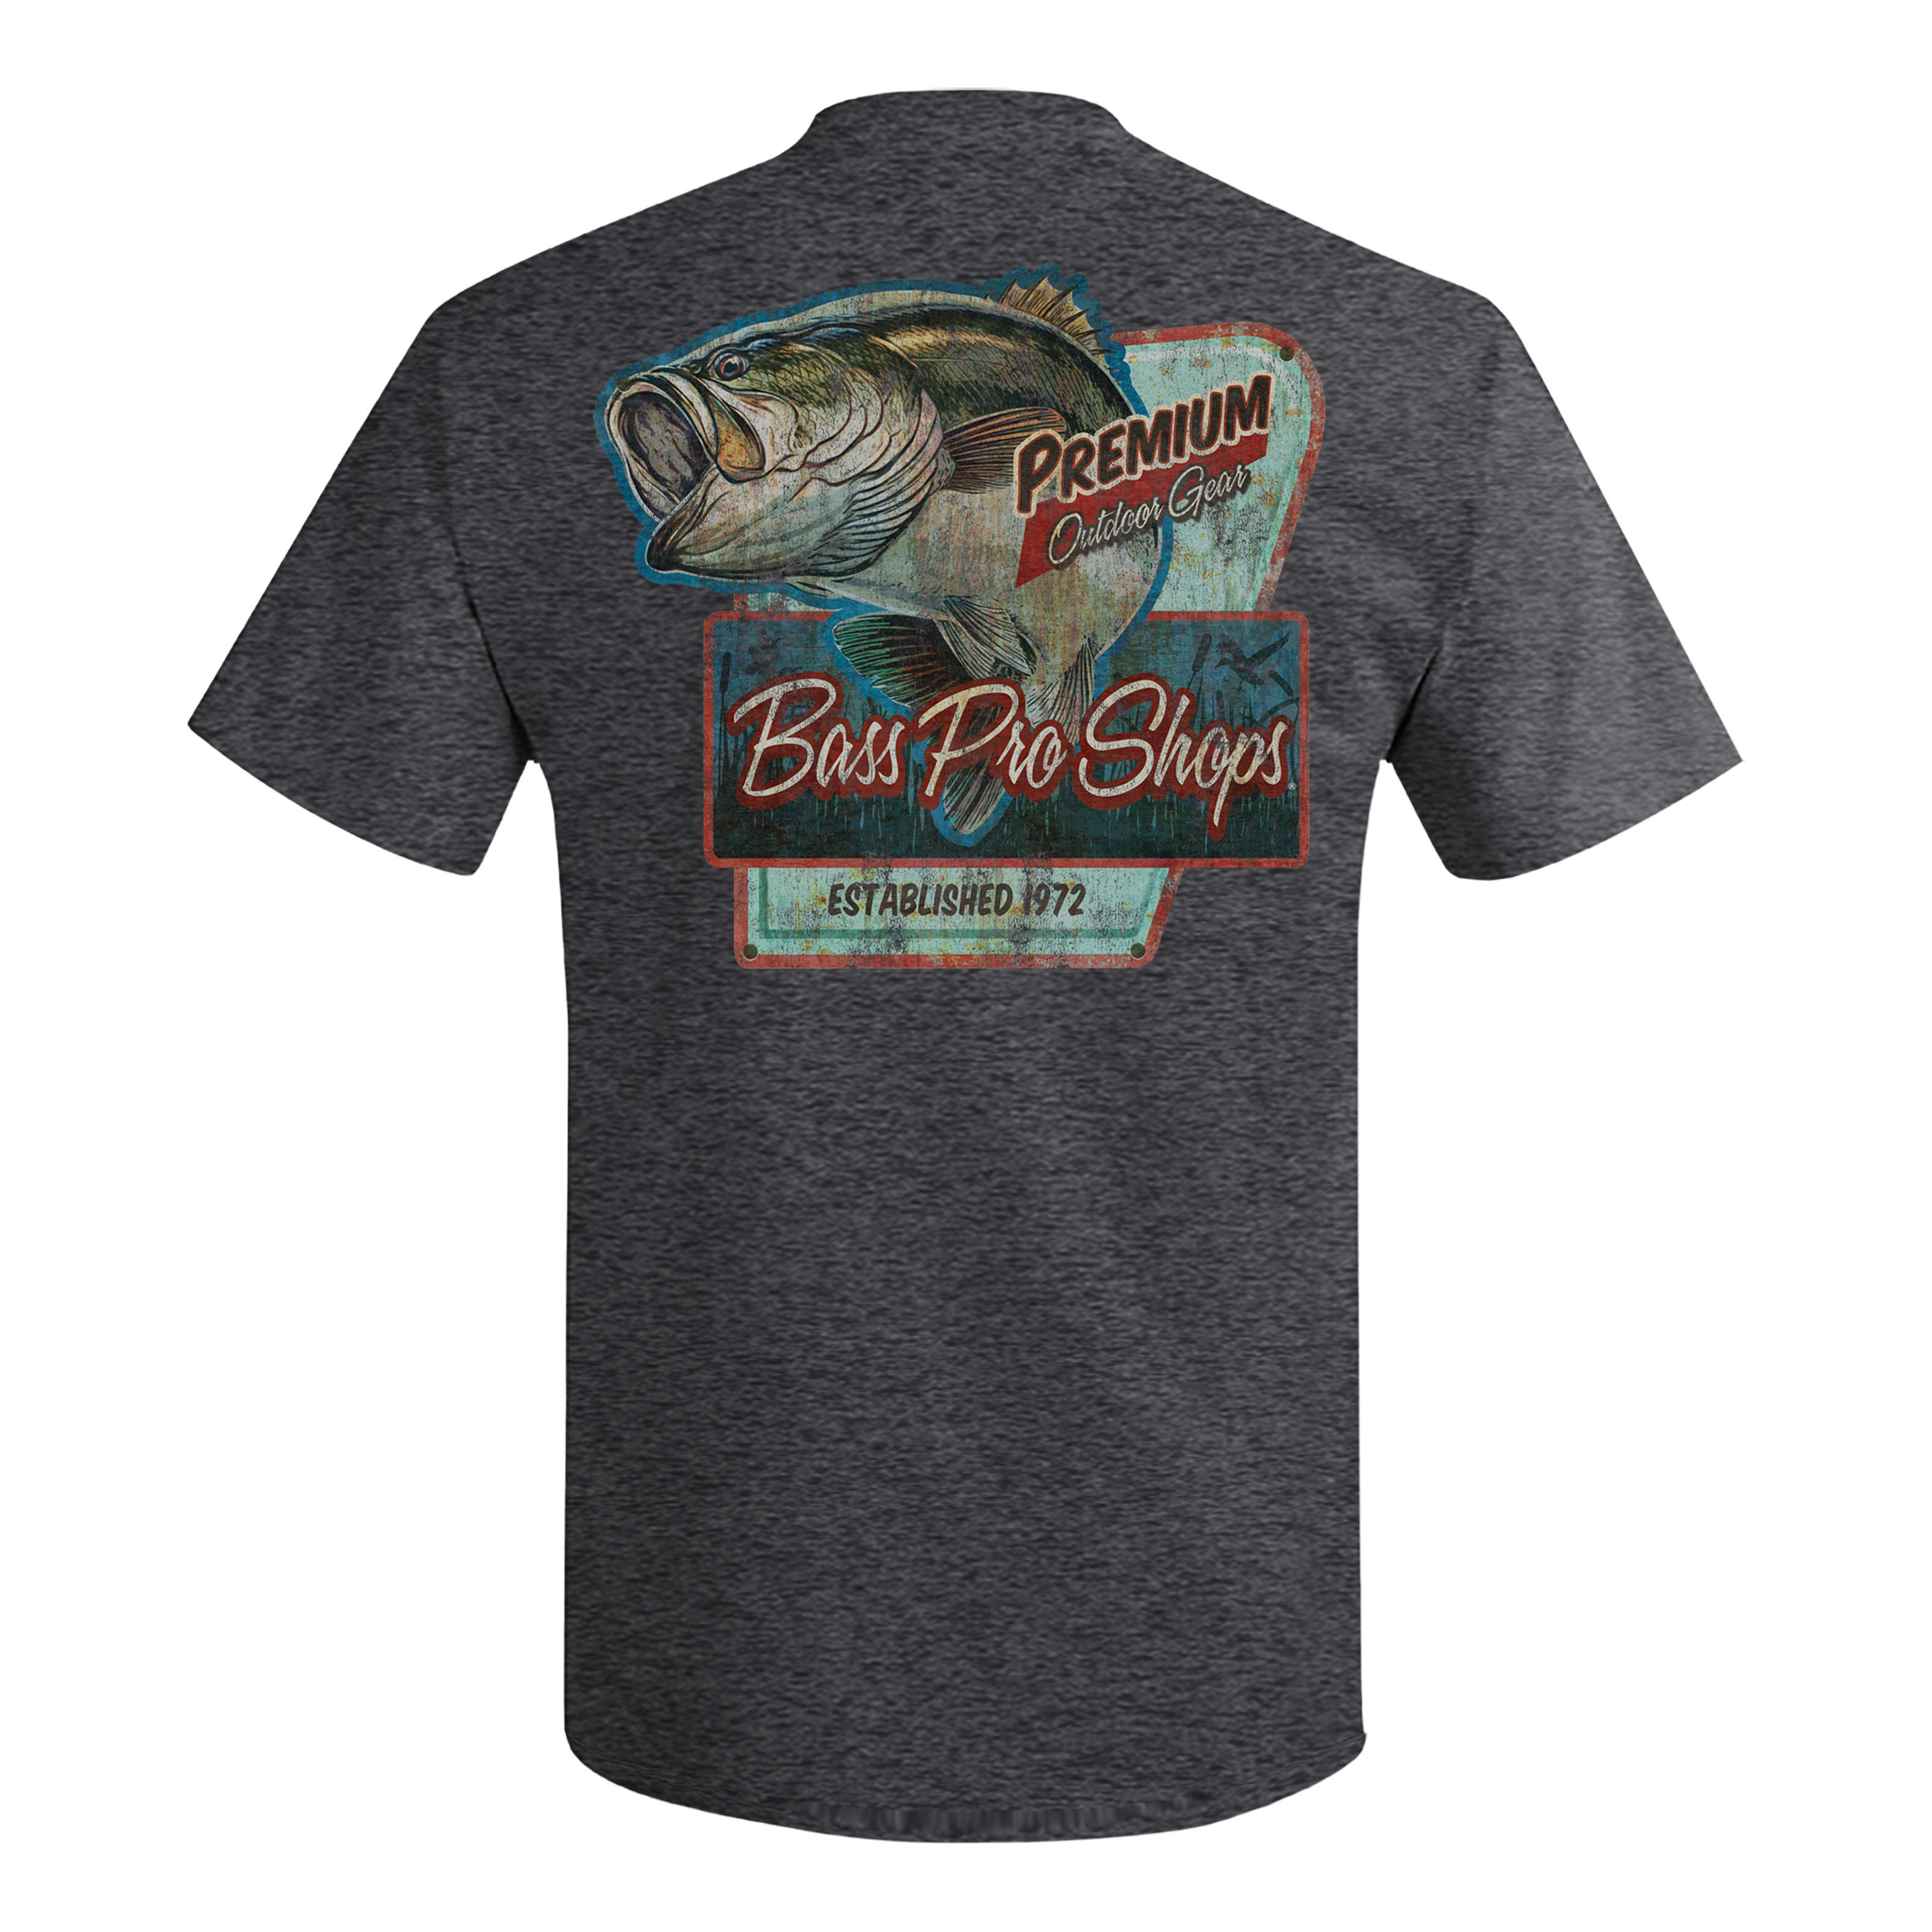 Bass Pro Shops Men's Weekend Fish Logo Short Sleeve T-Shirt